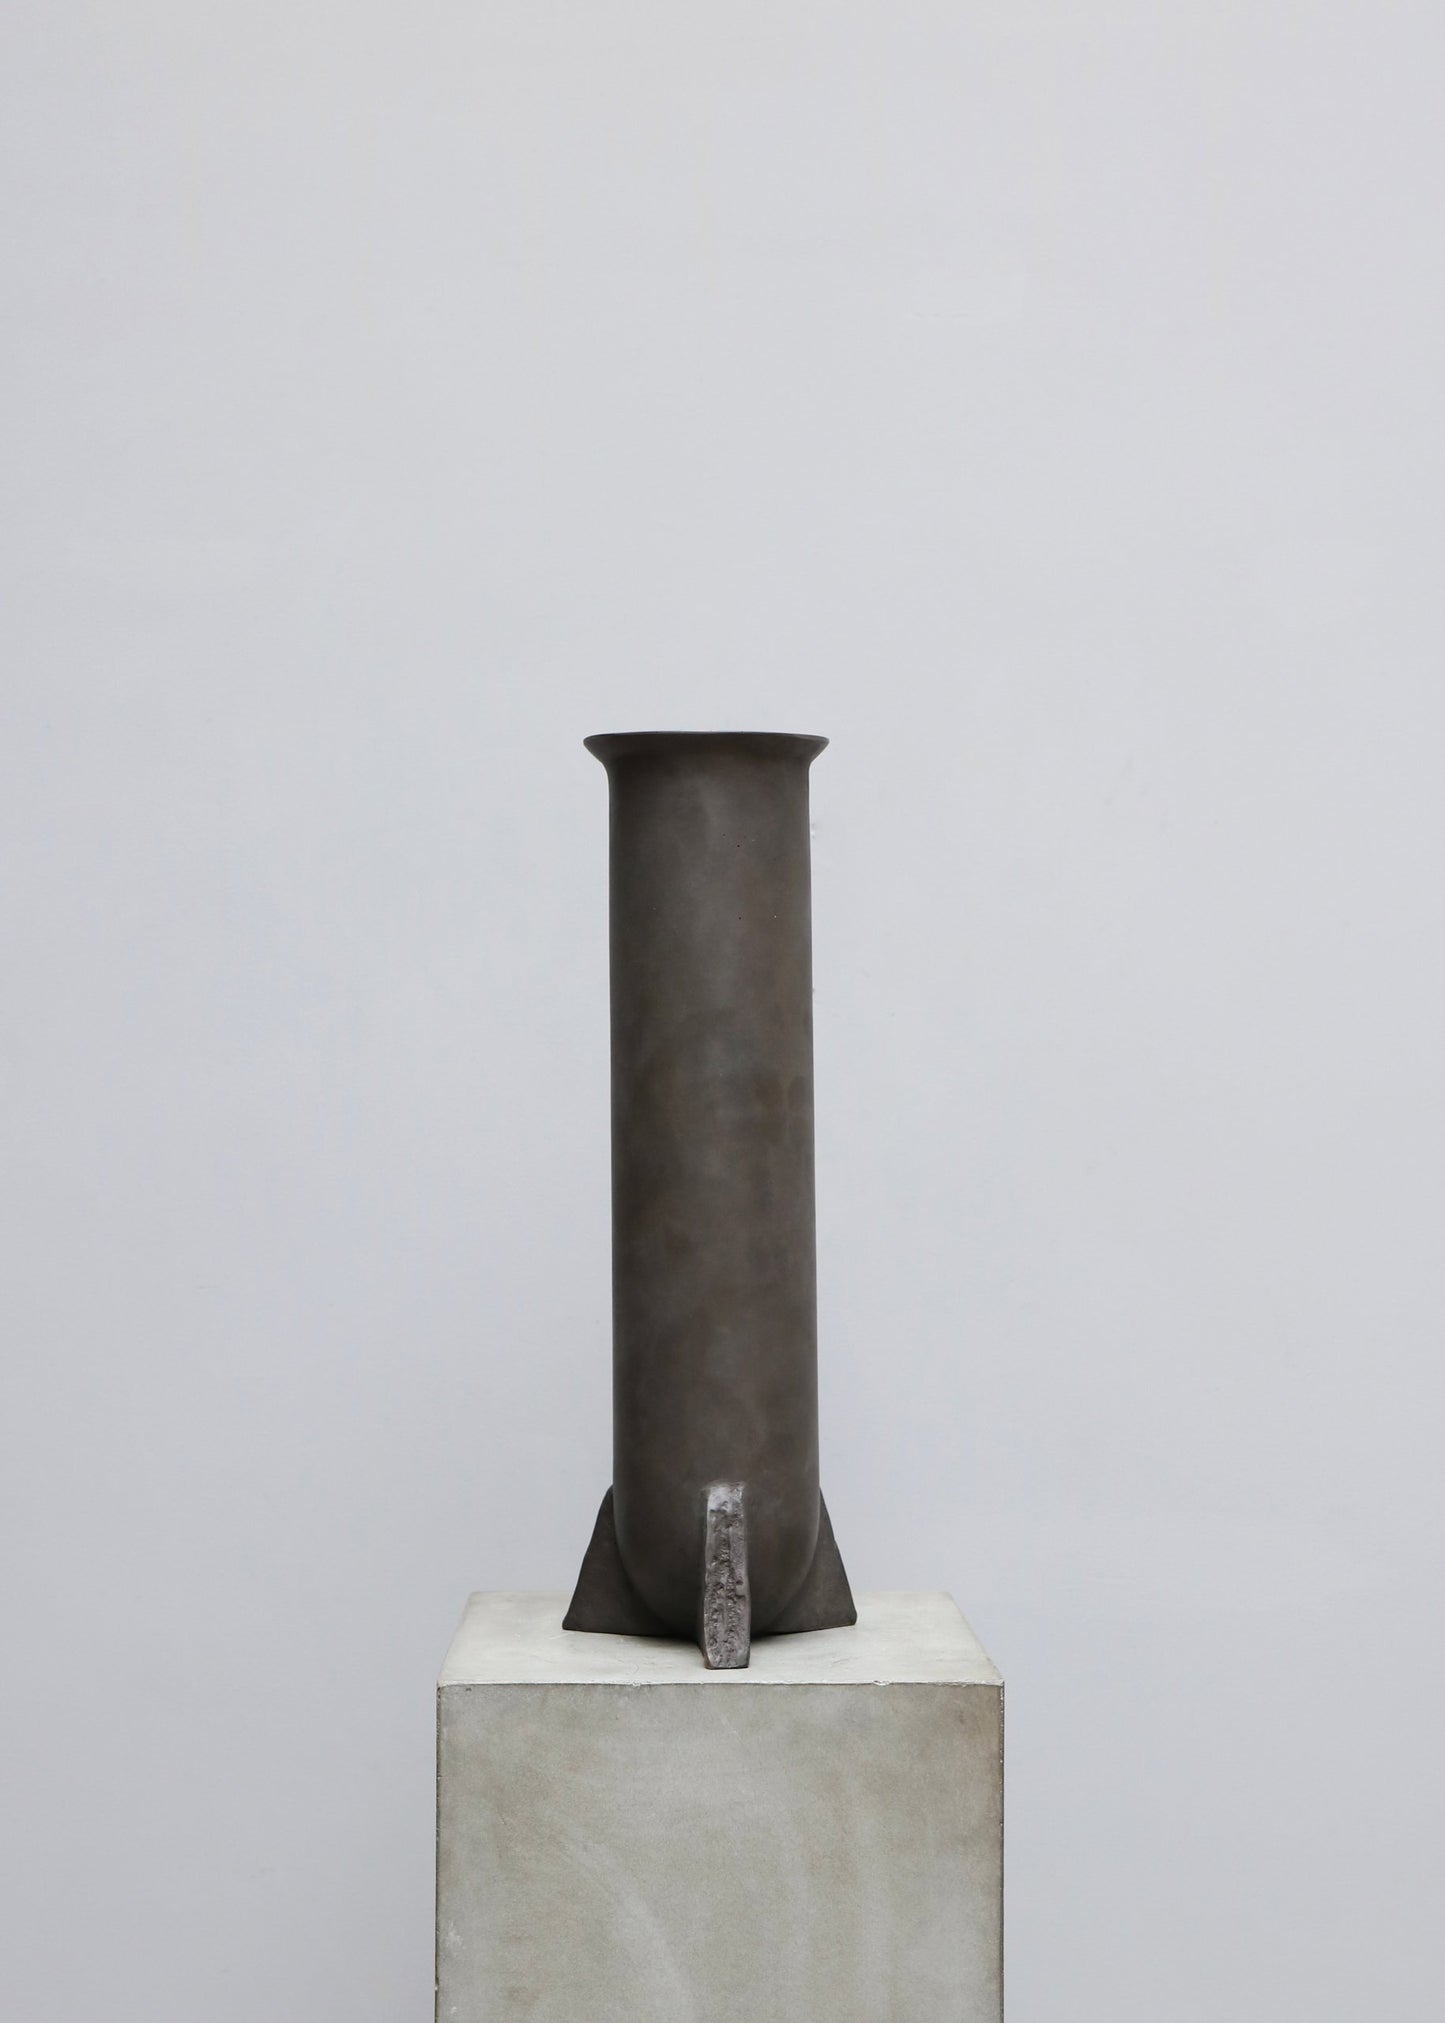 "Urnette Vase" by Rick Owens